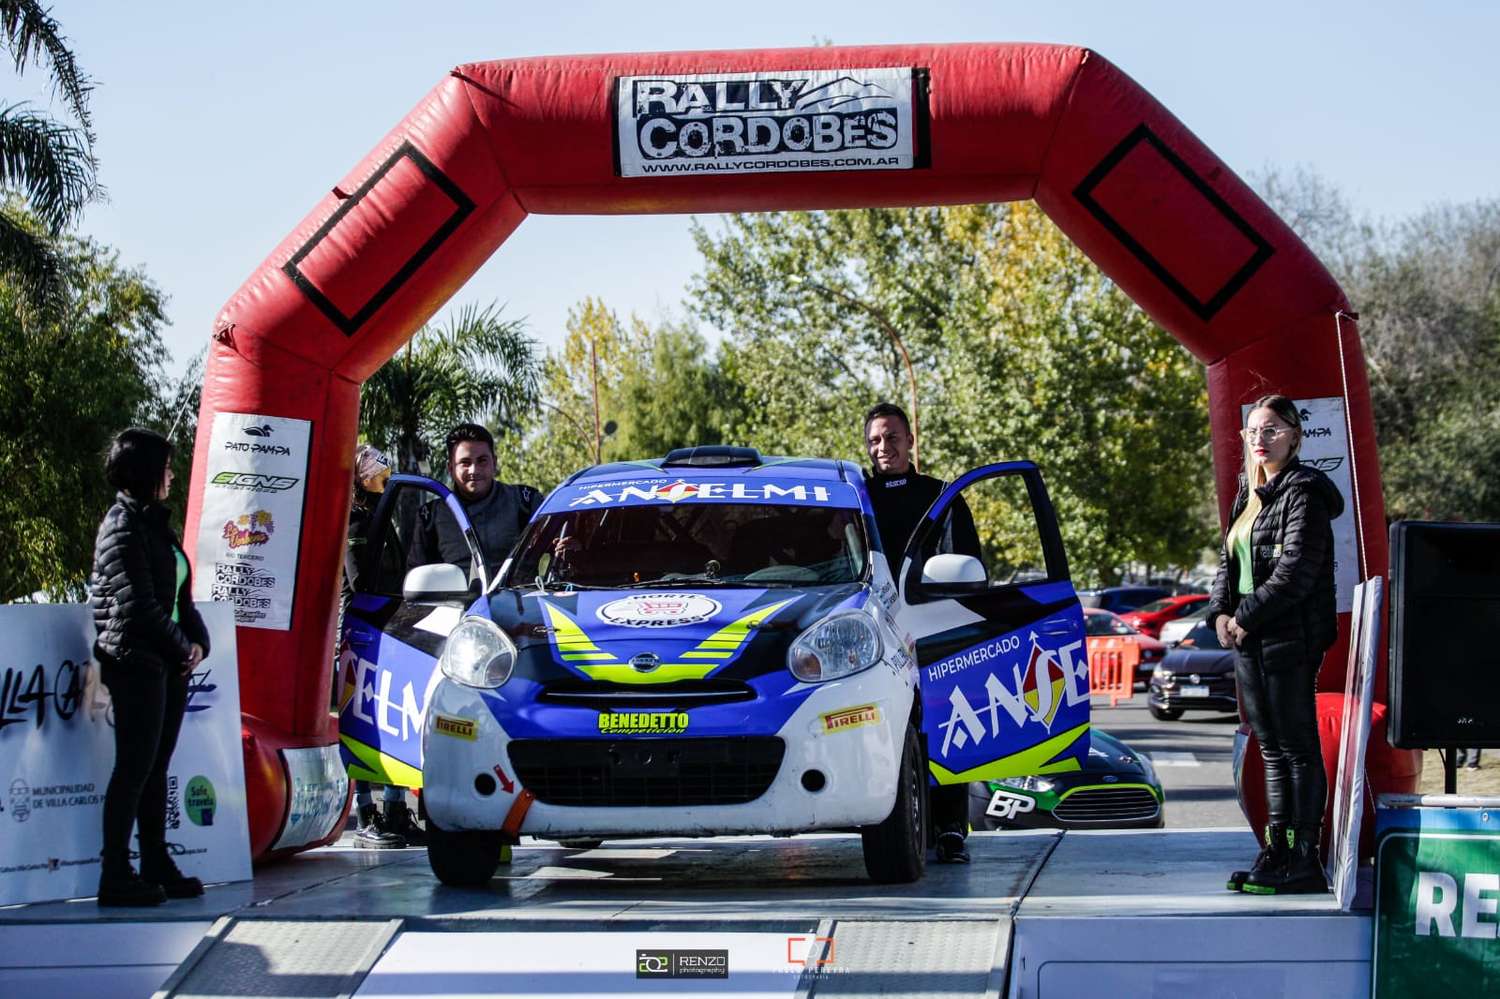 La dupla Anselmi - Anselmi tienen como objetivo finalizar la 23ª edición del rally local.